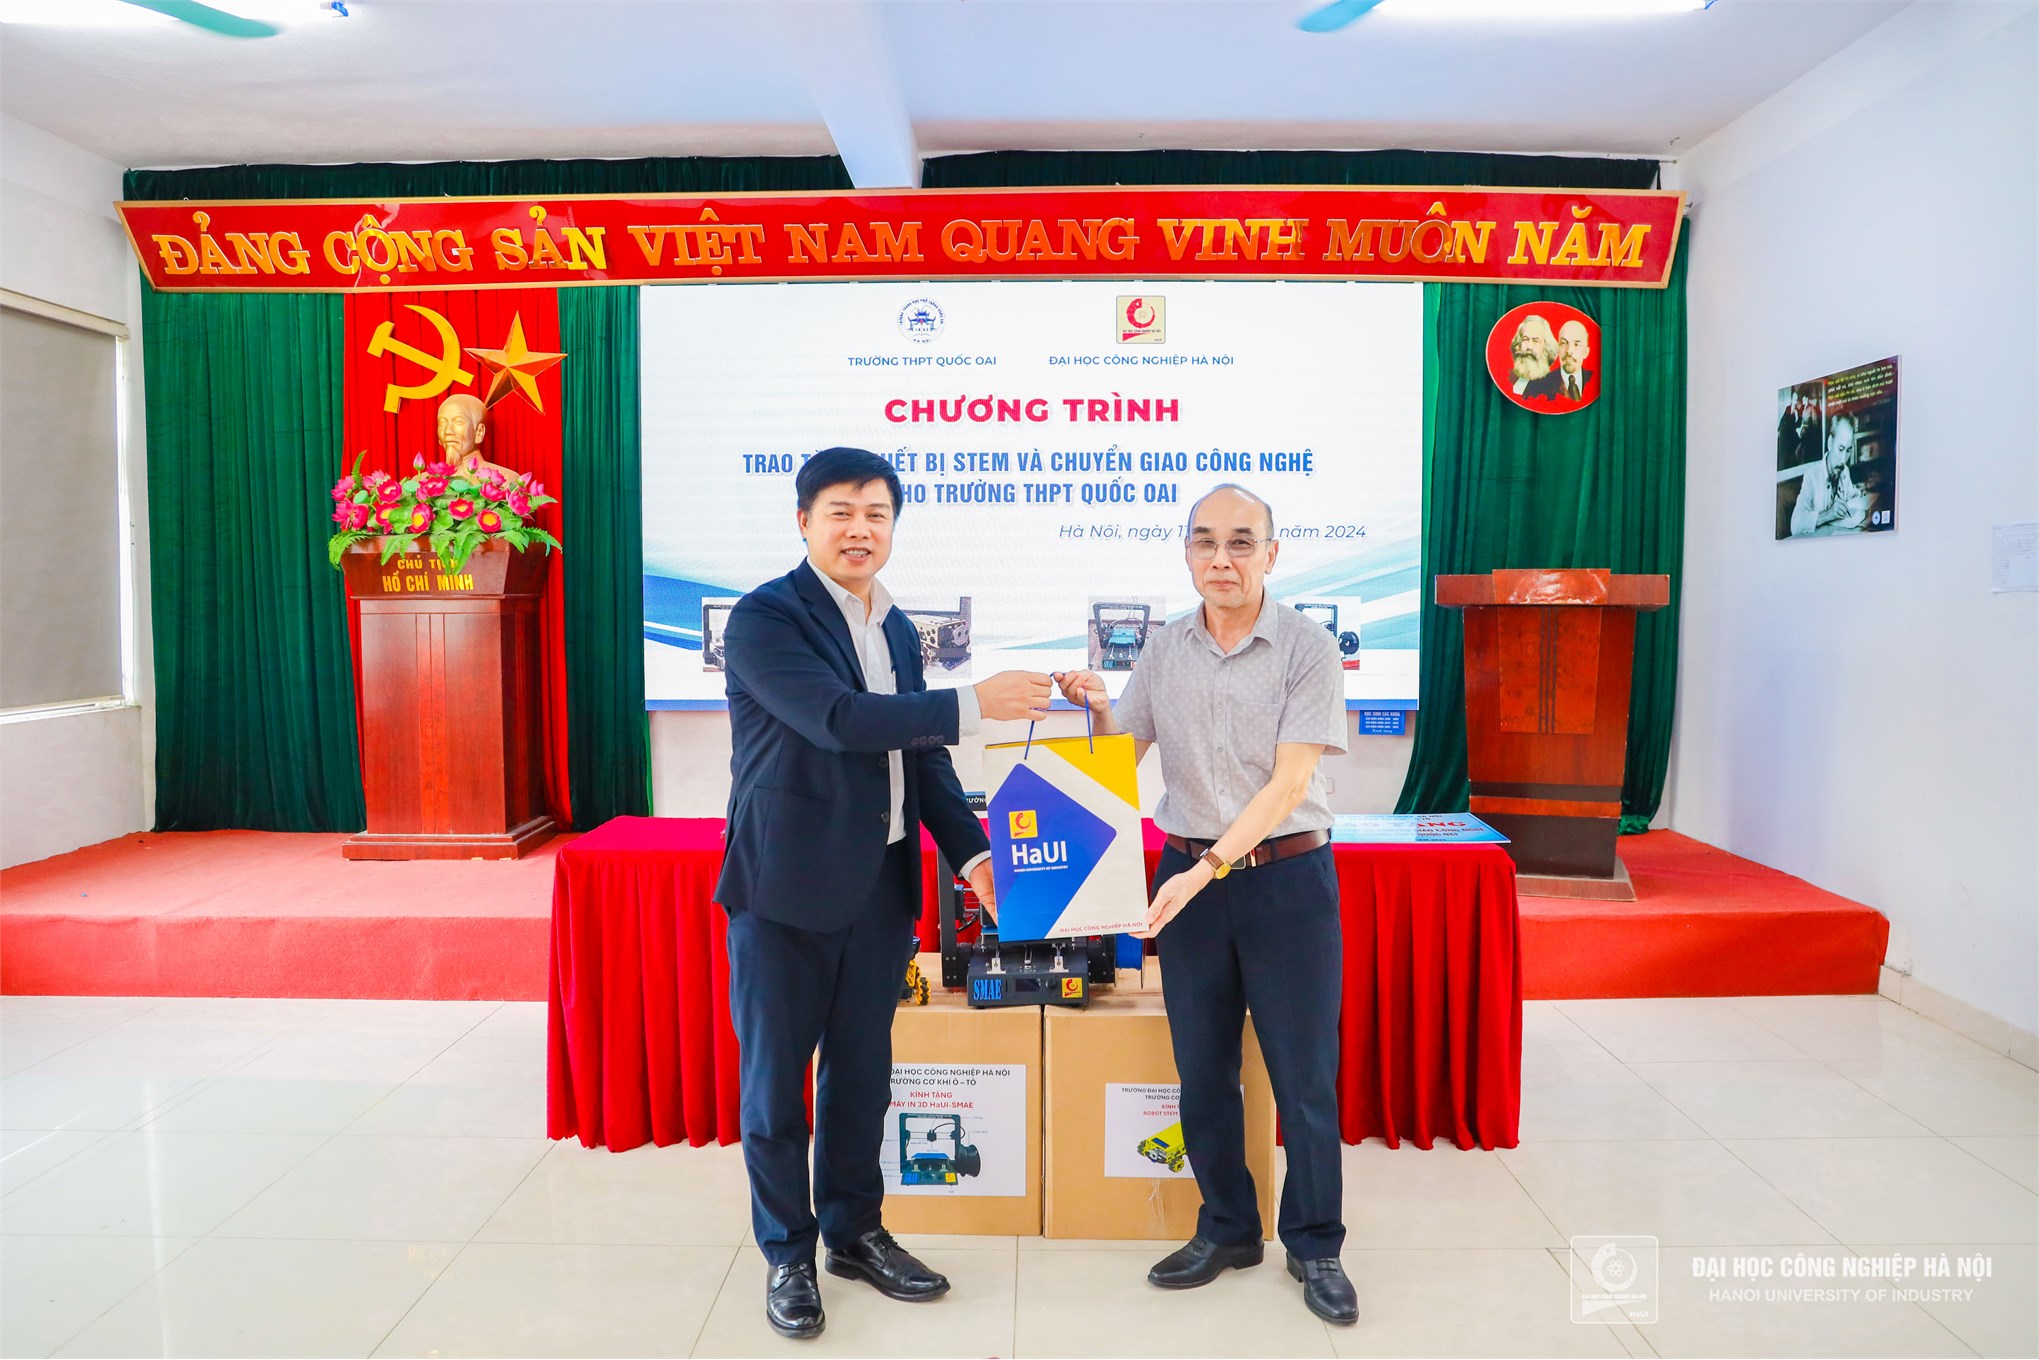 Trường Cơ khí – Ô tô, Đại học Công nghiệp Hà Nội mở rộng hoạt động kết nối giáo dục STEM với học sinh THPT Quốc Oai, Hà Nội